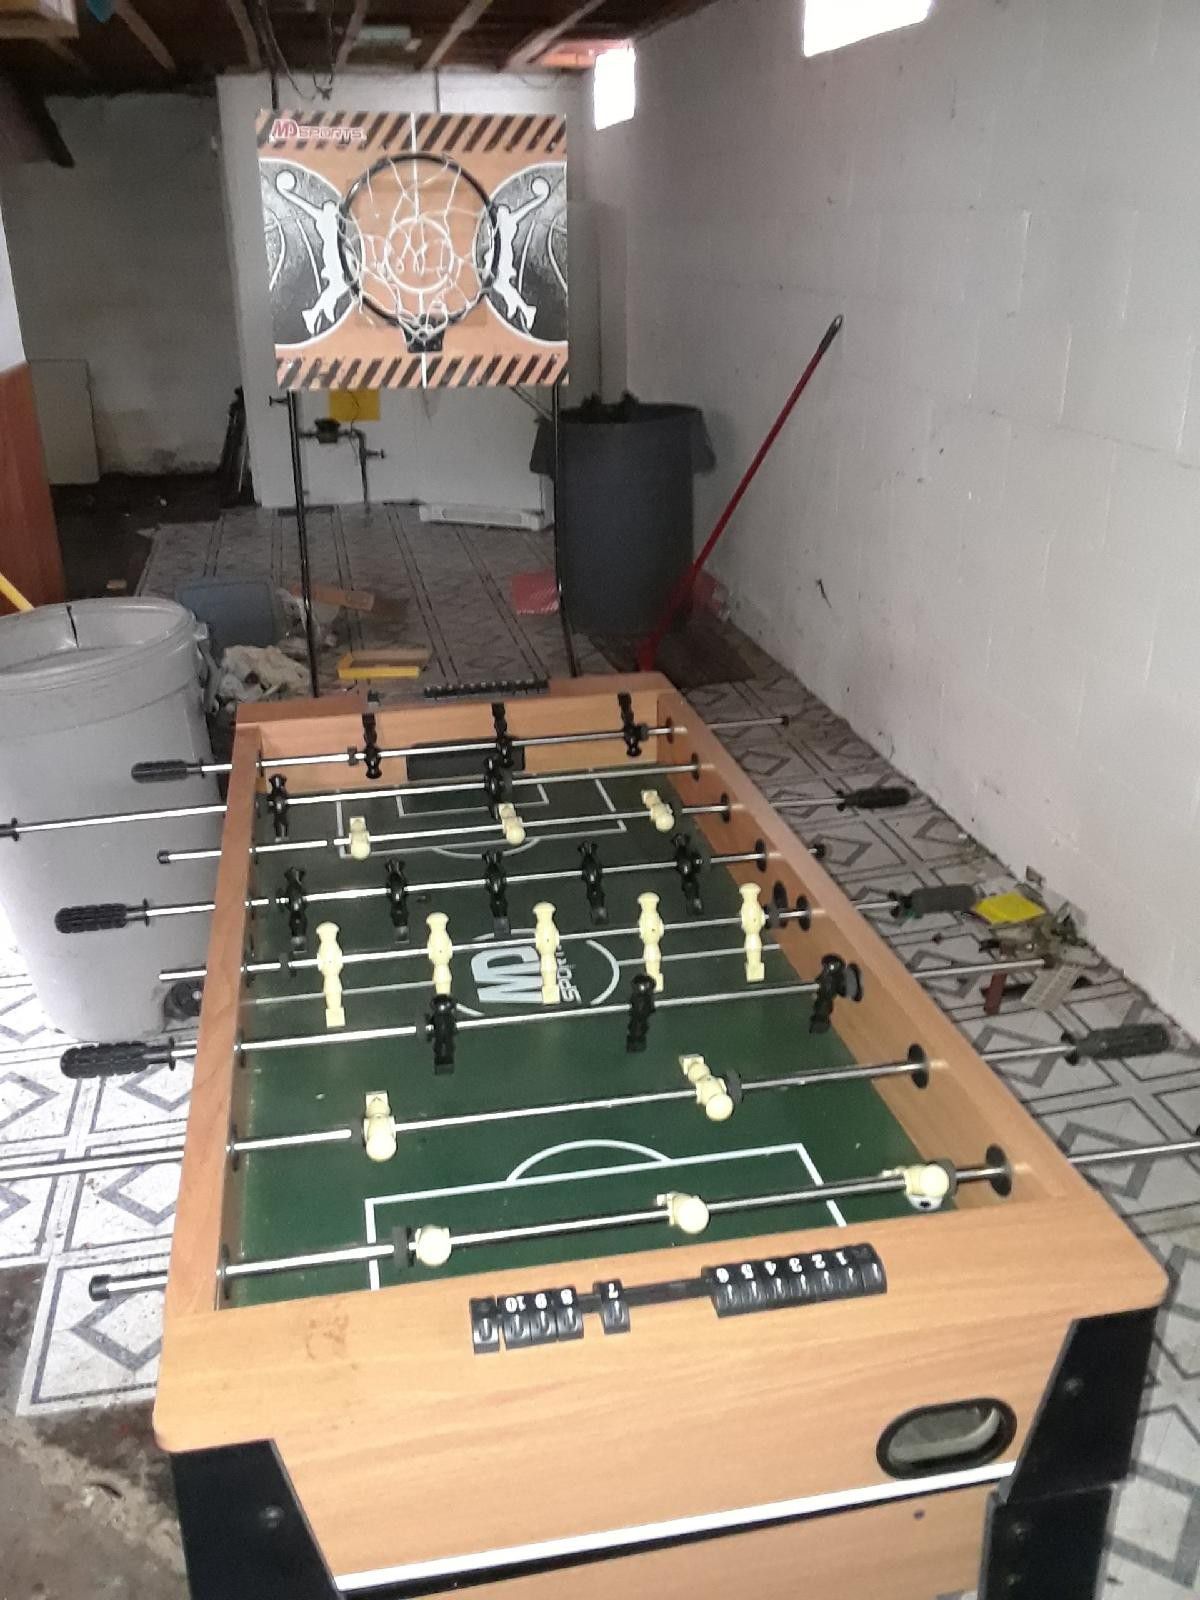 Foosball table/ Air hockey table